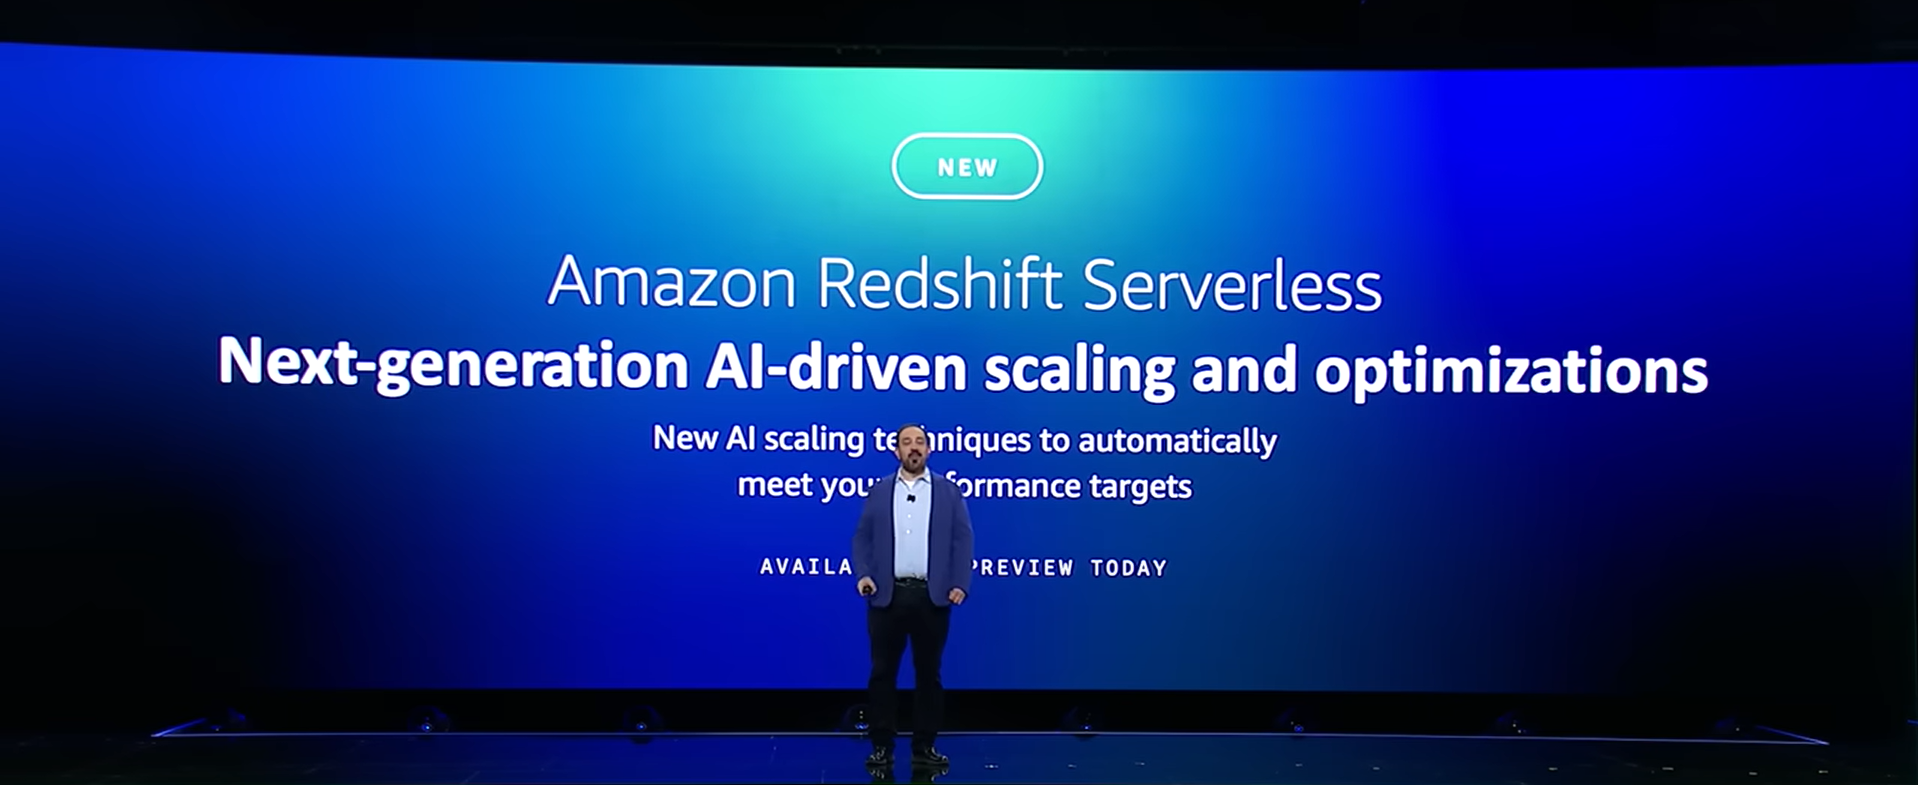 Peter DeSantis (General Manager, Amazon EC2) công bố tính năng mở rộng và tối ưu hóa tài nguyên dựa trên AI của Amazon Redshift Serverless